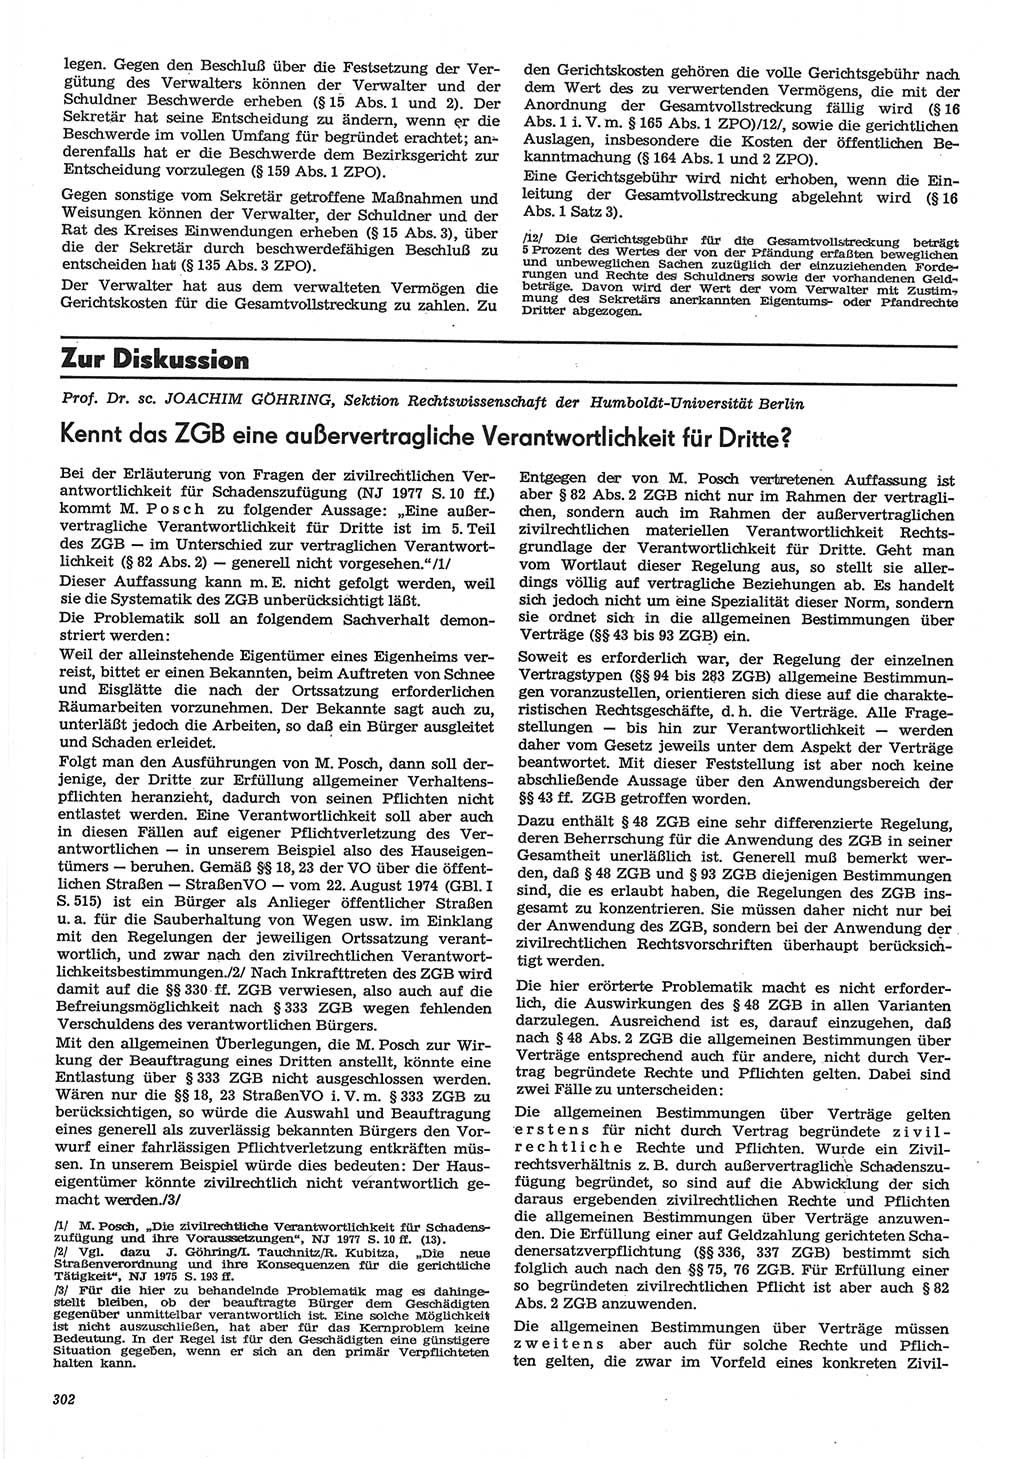 Neue Justiz (NJ), Zeitschrift für Recht und Rechtswissenschaft-Zeitschrift, sozialistisches Recht und Gesetzlichkeit, 31. Jahrgang 1977, Seite 302 (NJ DDR 1977, S. 302)